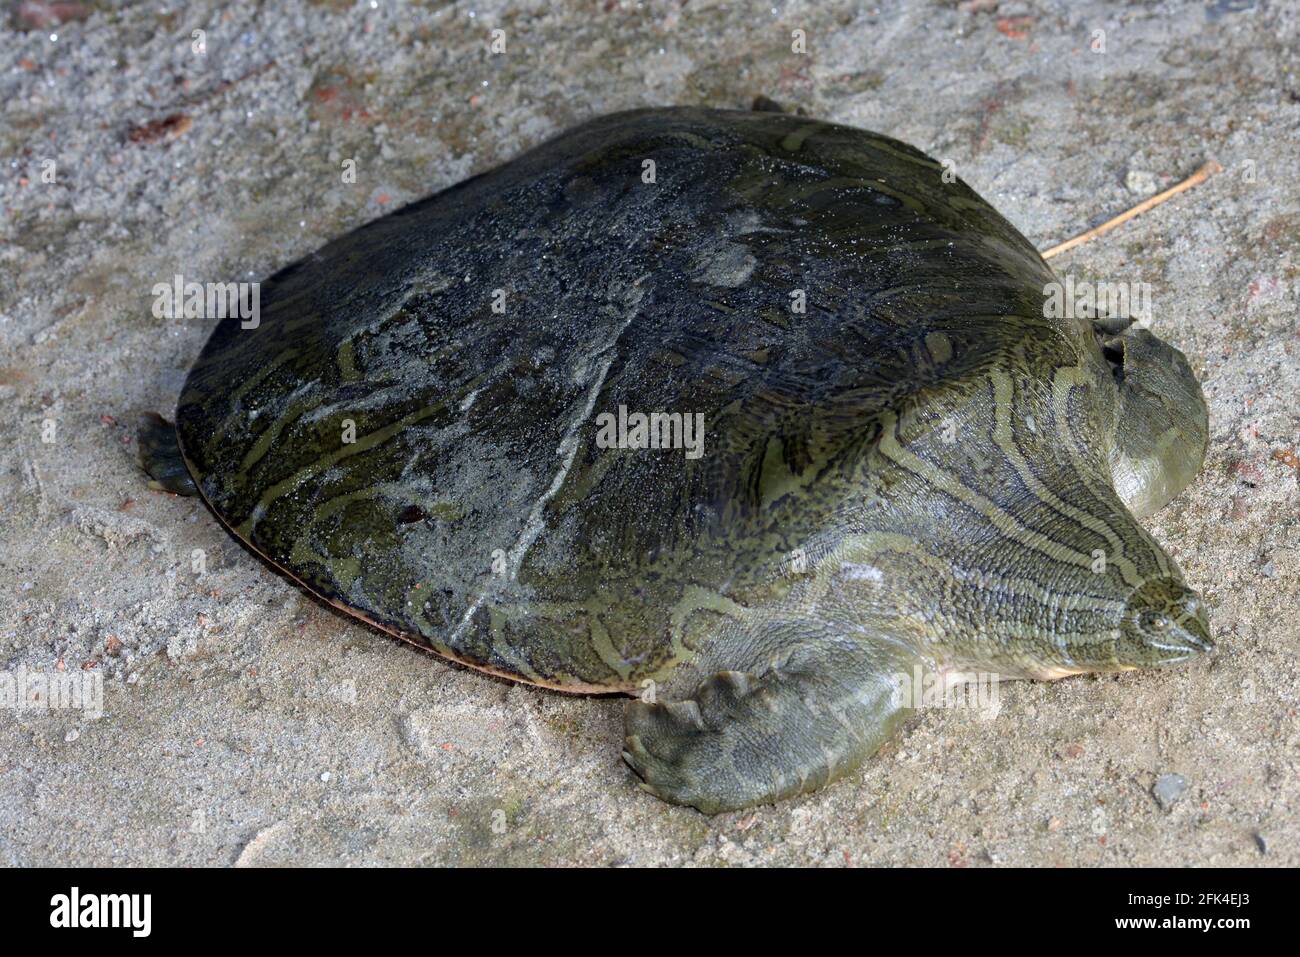 Indian Narrow-headed Softshell Turtle Stock Photo